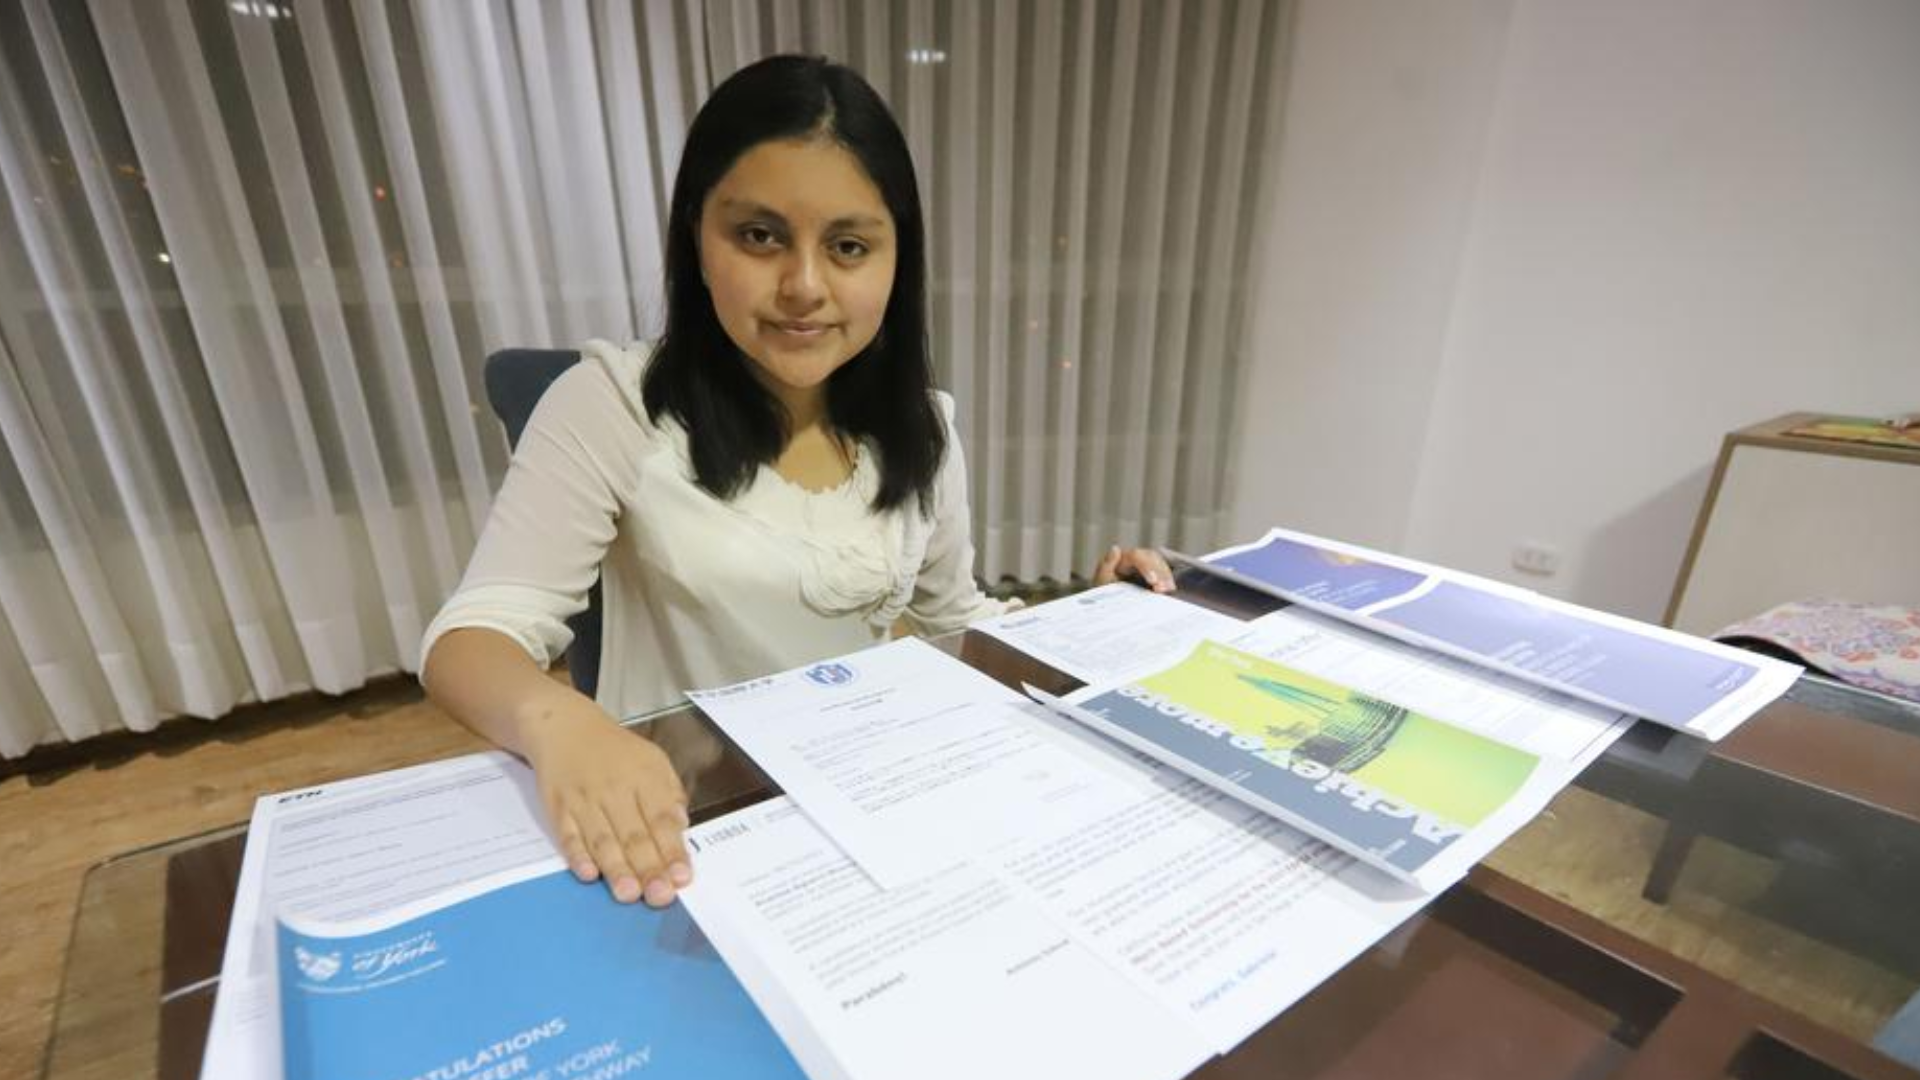 Adolescente peruana de 16 años ingresó a diez importantes universidades internacionales